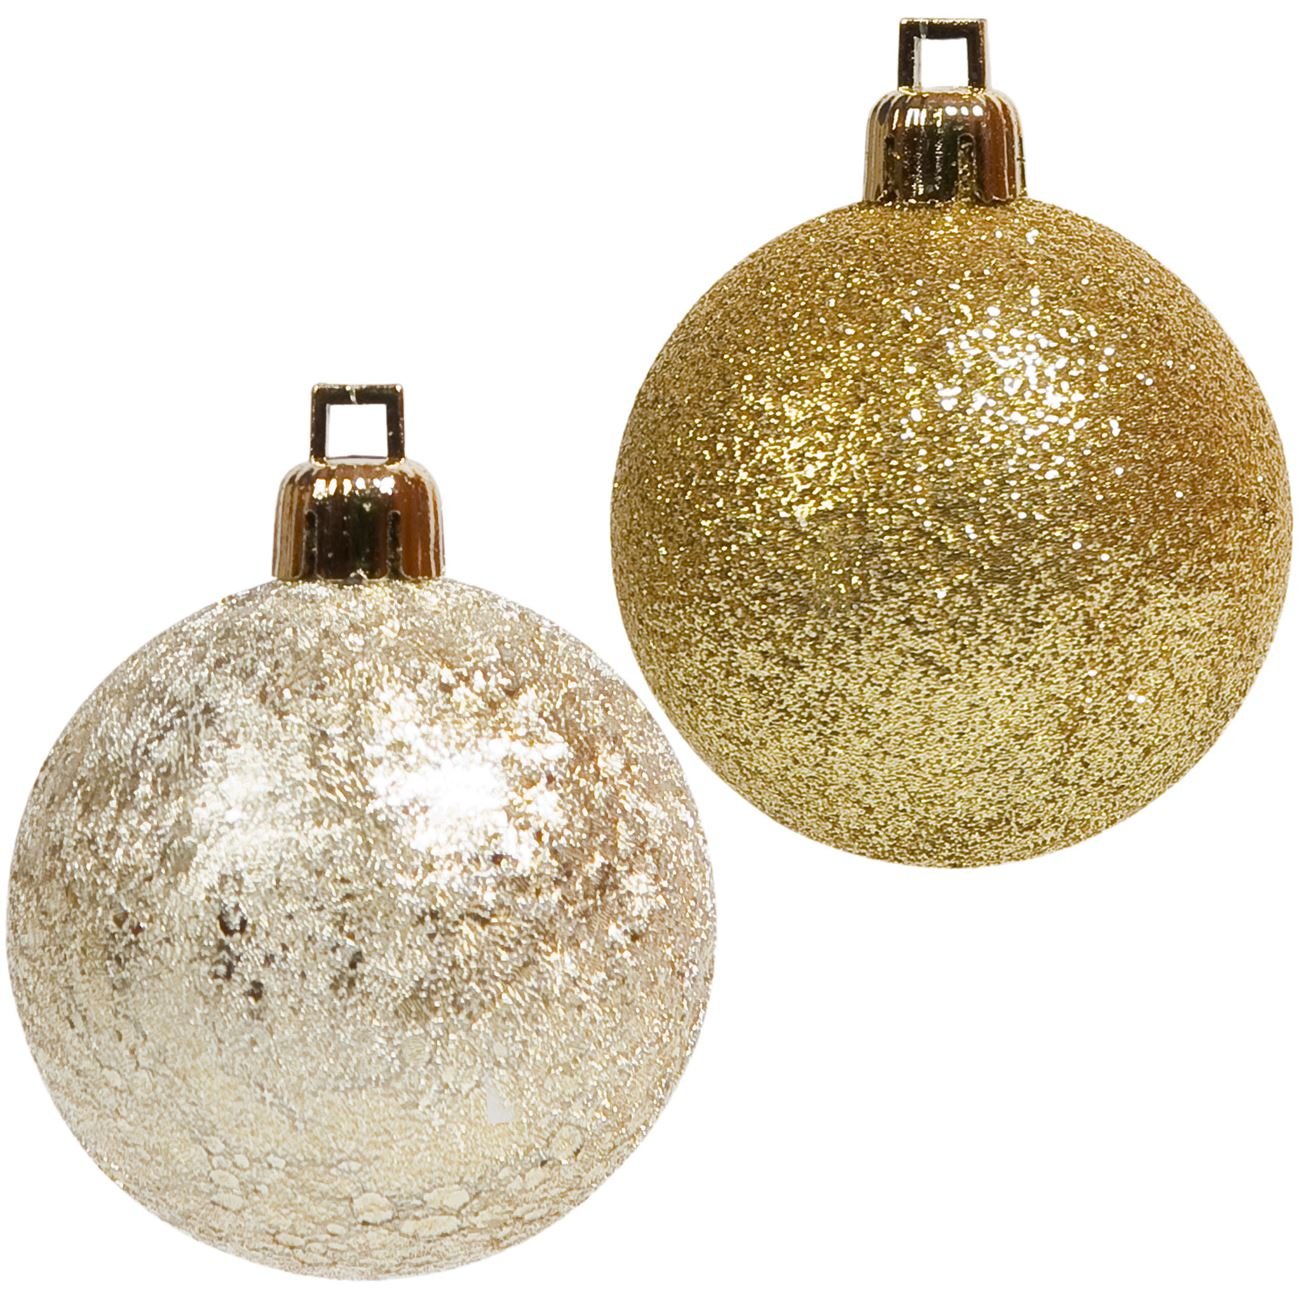 20 db 3 cm Arany/pezsgő karácsonyfa gömb dísz 